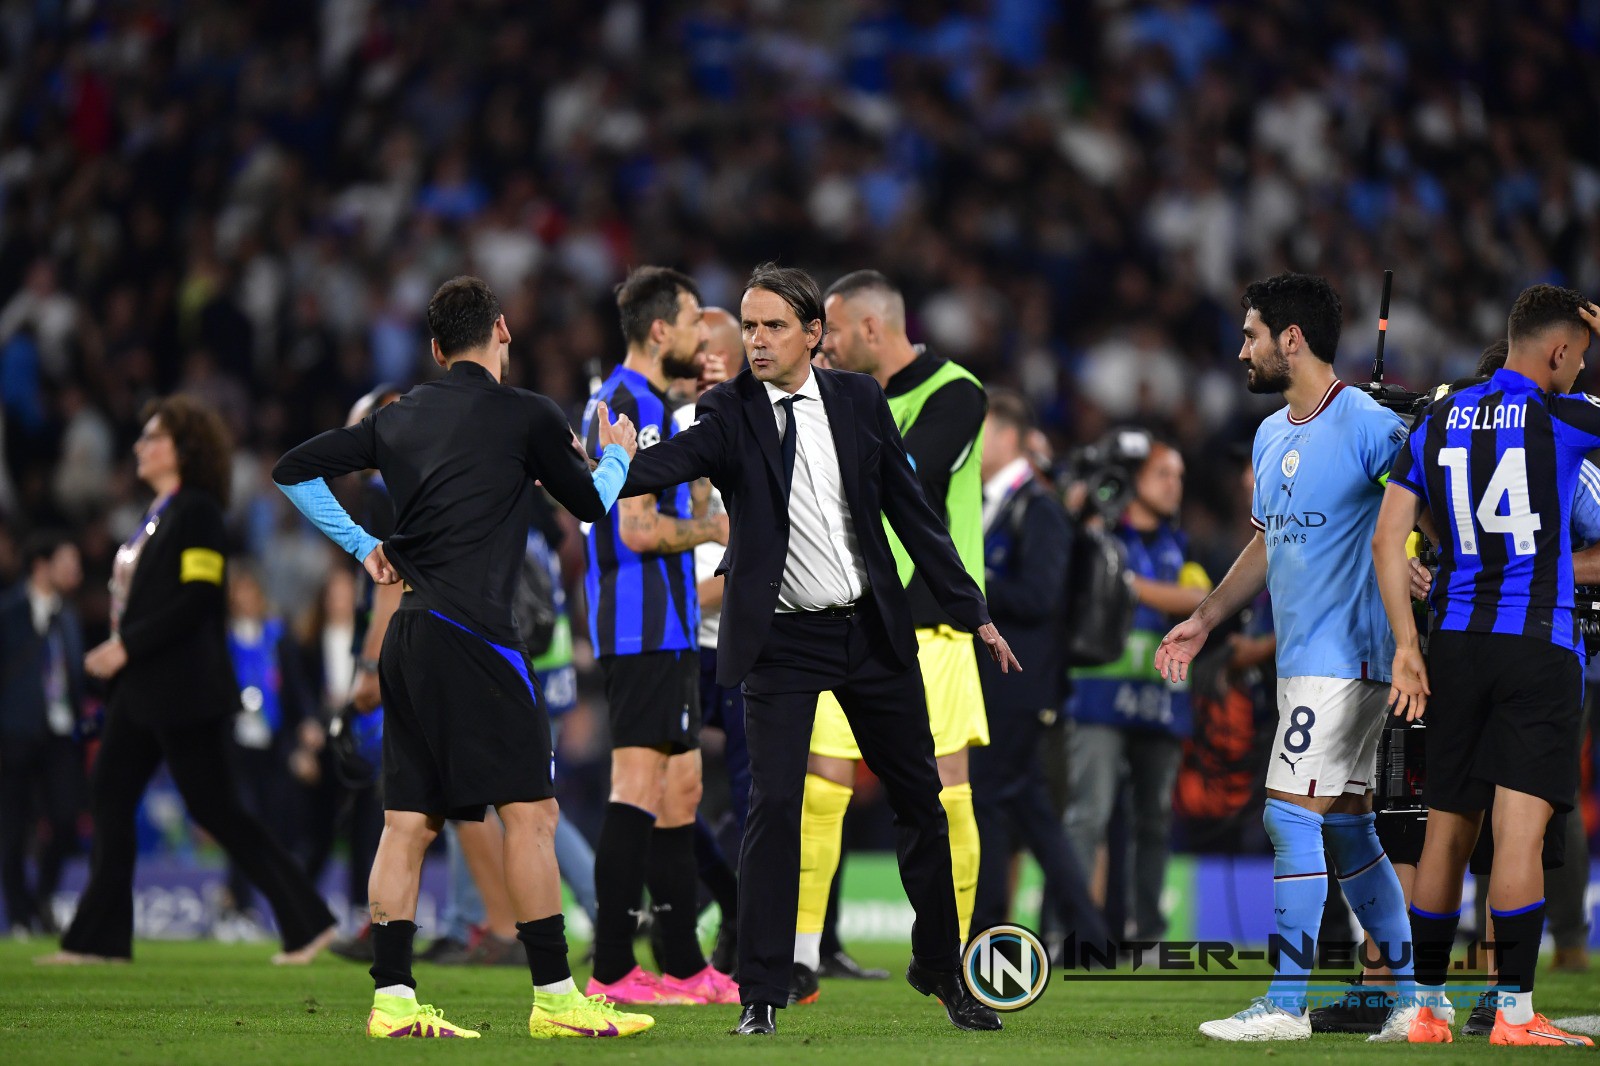 L’Inter ringrazia dopo la finale: «Ennesimo applauso ai nostri tifosi, gran serata»